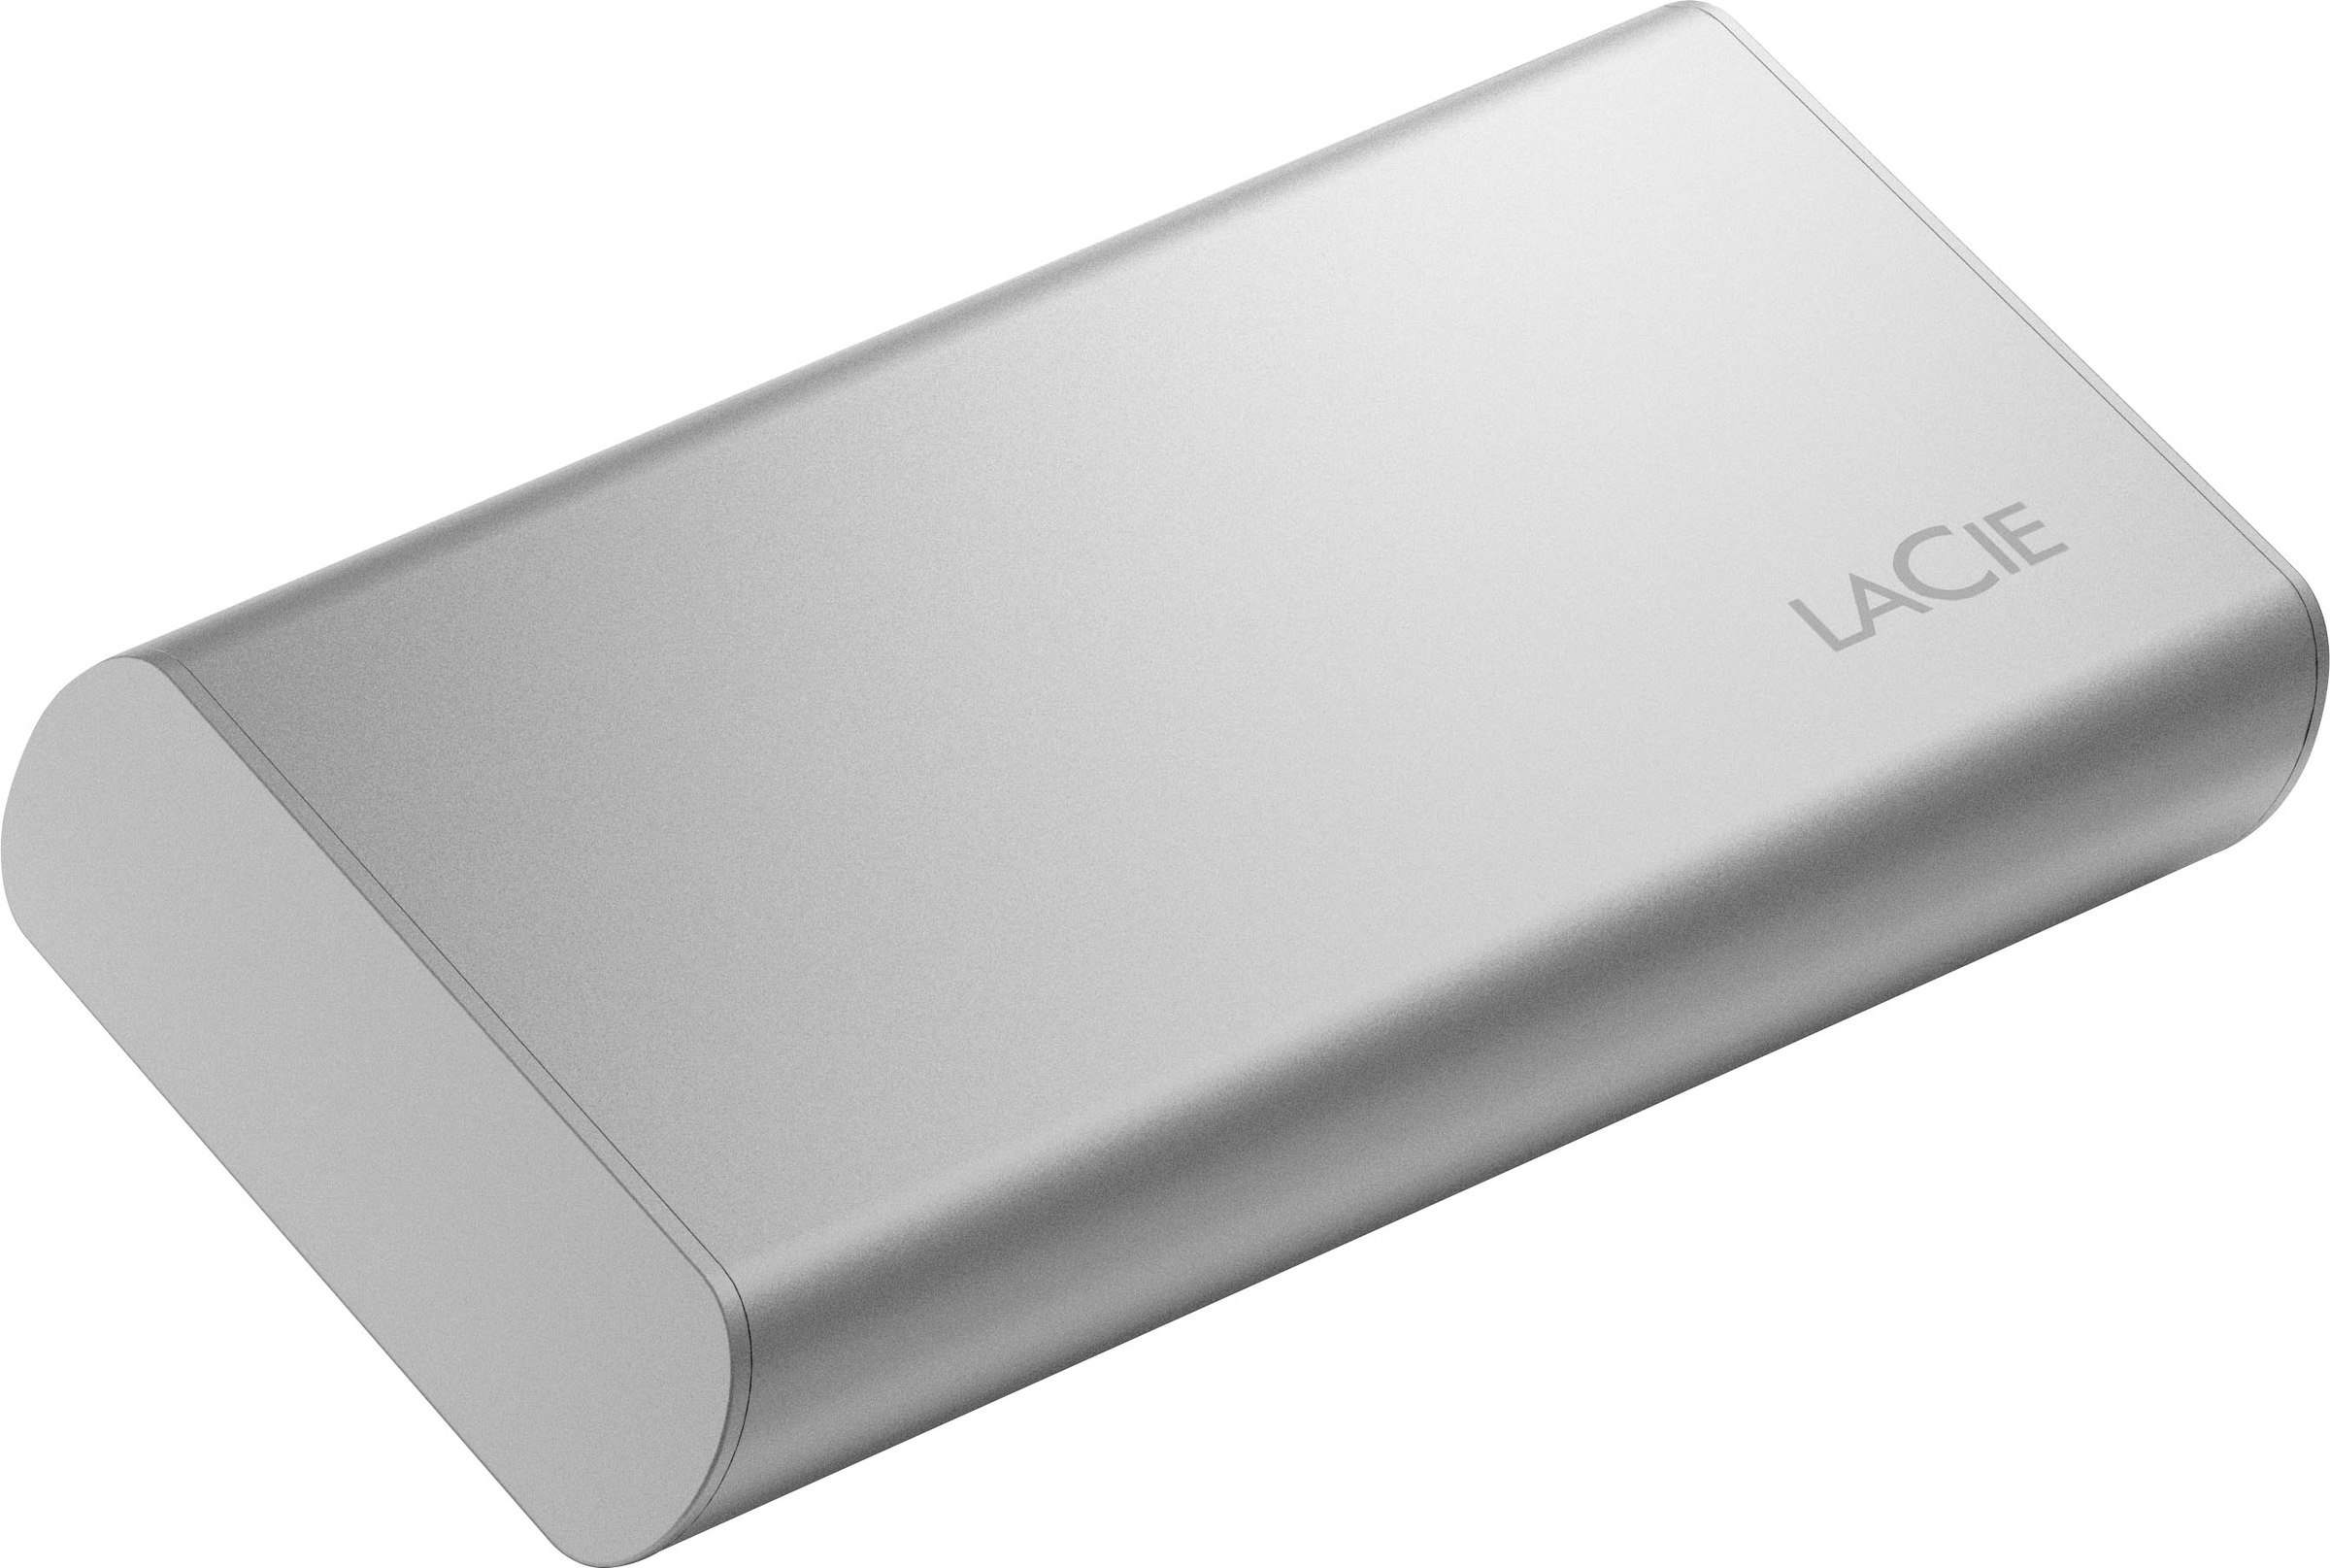 LaCie externe SSD »Portable SSD«, Anschluss USB-C